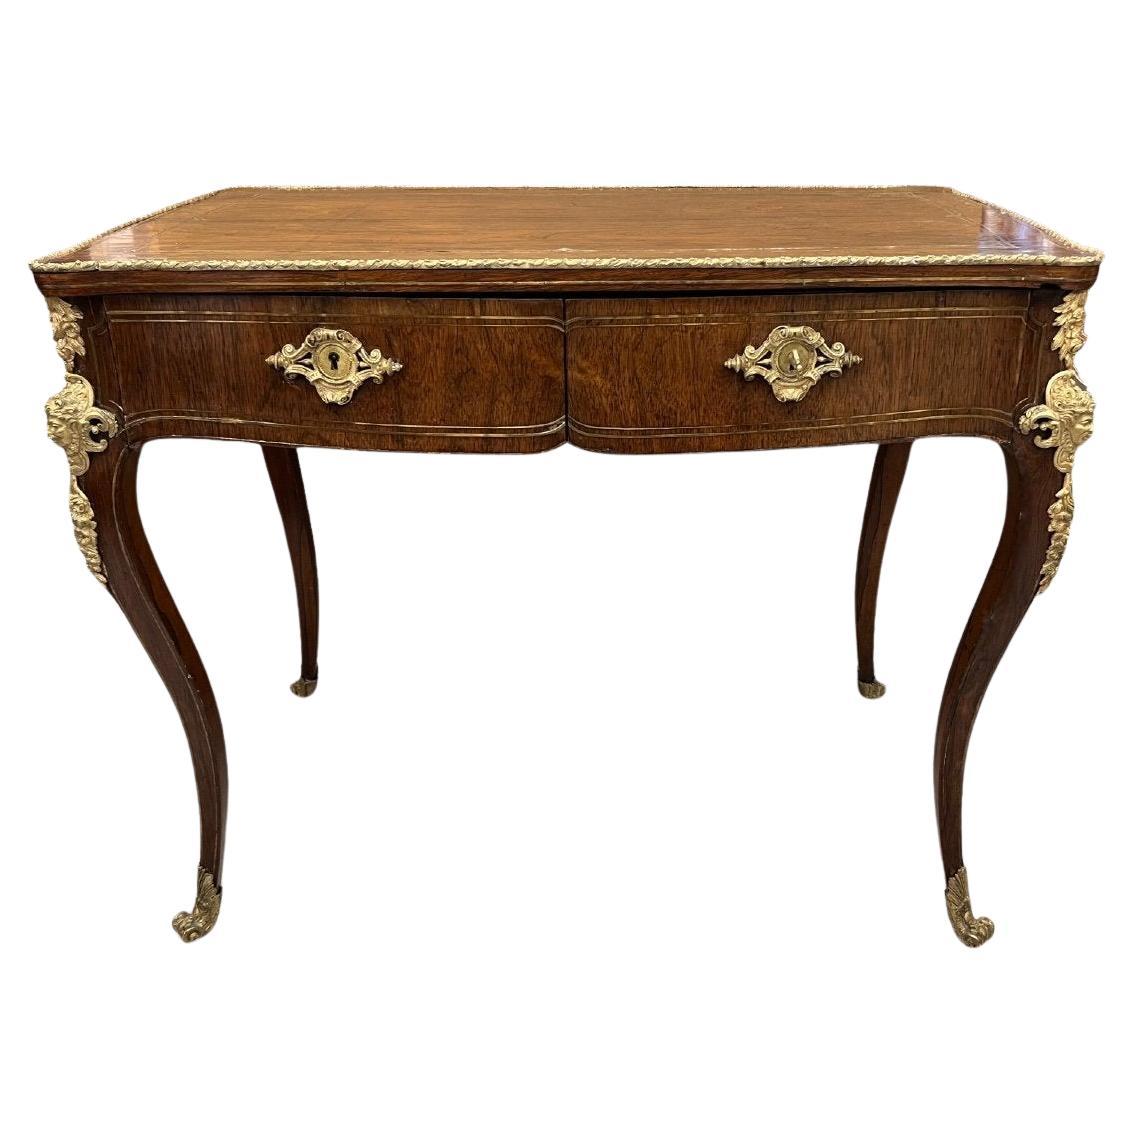 Schreibtisch im Übergangsstil des 19. Jahrhunderts aus der Zeit Napoleons III.